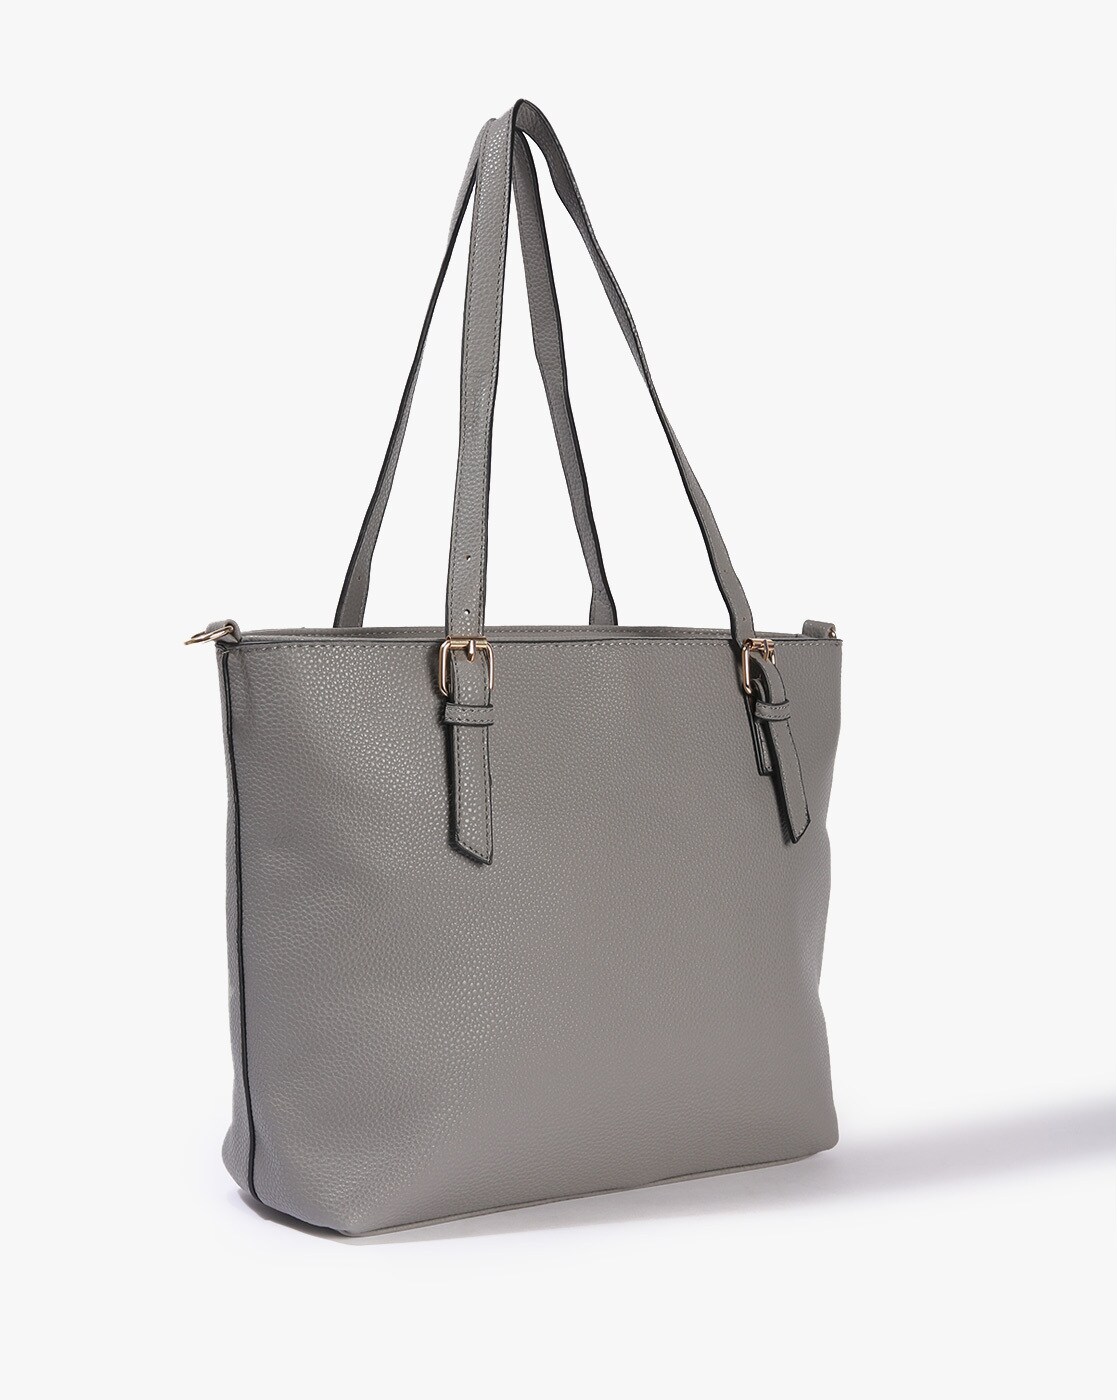 PIVRING backpack, light grey, 24x8x34 cm/9 l (9 ½x3 ¼x13 ½